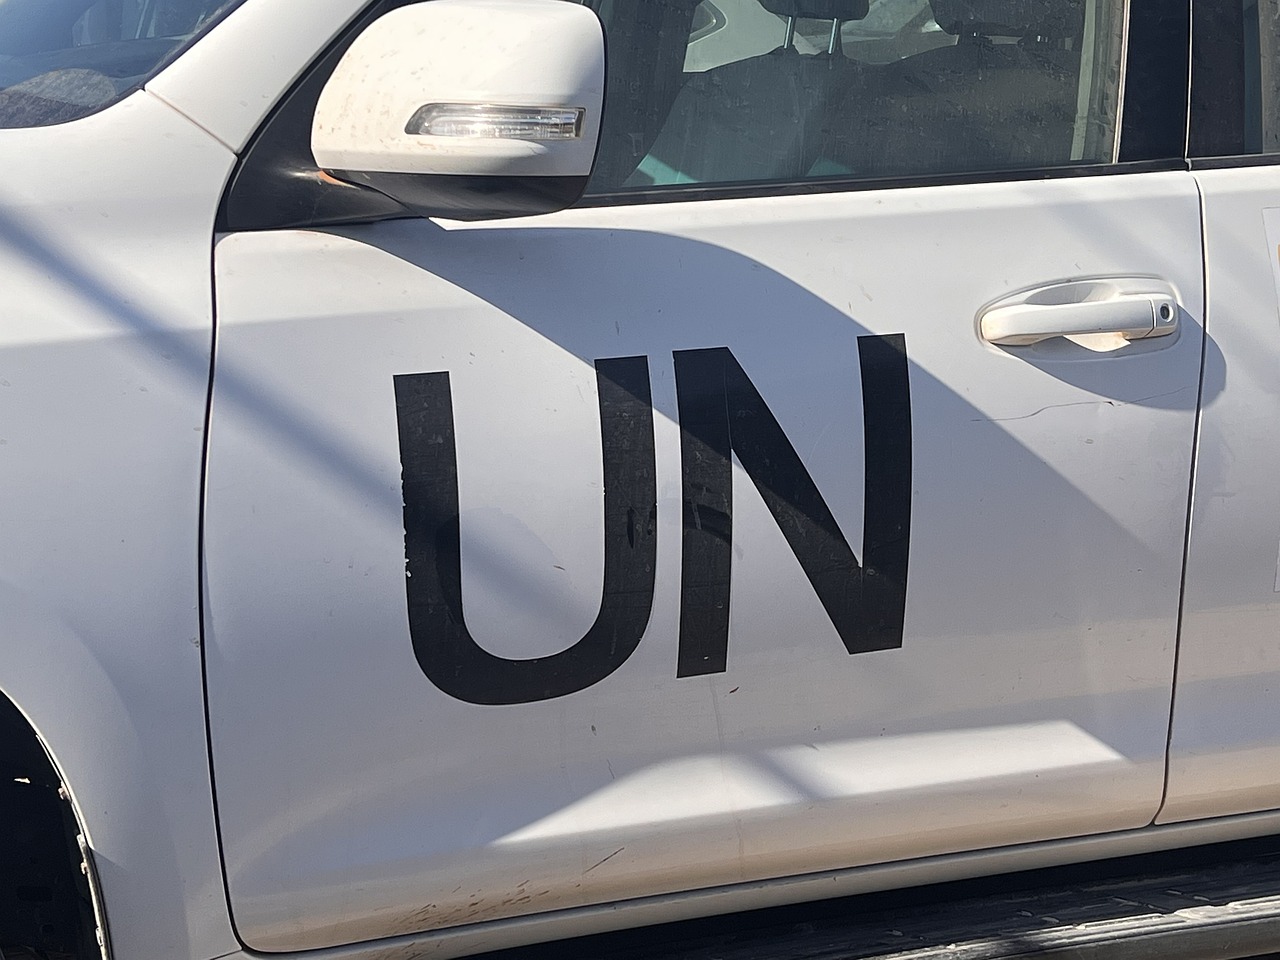 Attacco mortale a un veicolo delle Nazioni Unite vicino al valico di Rafah